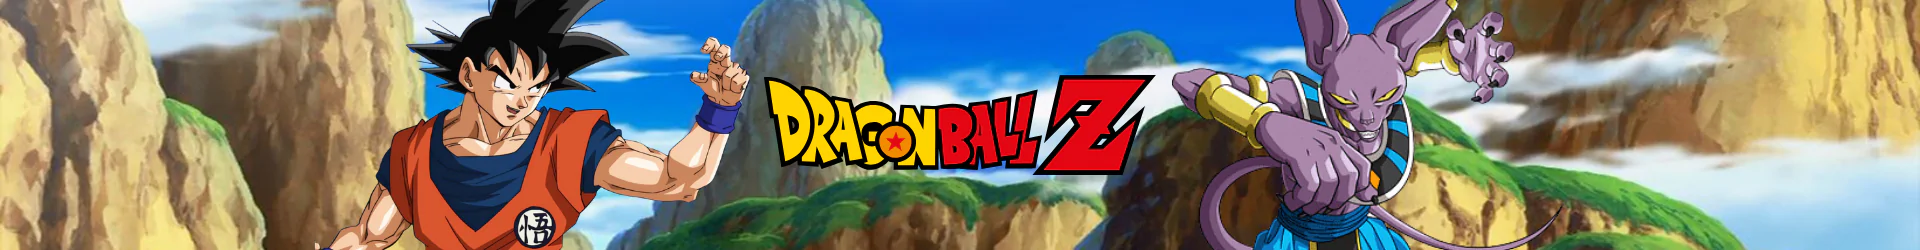 Dragon Ball hausschuhe banner